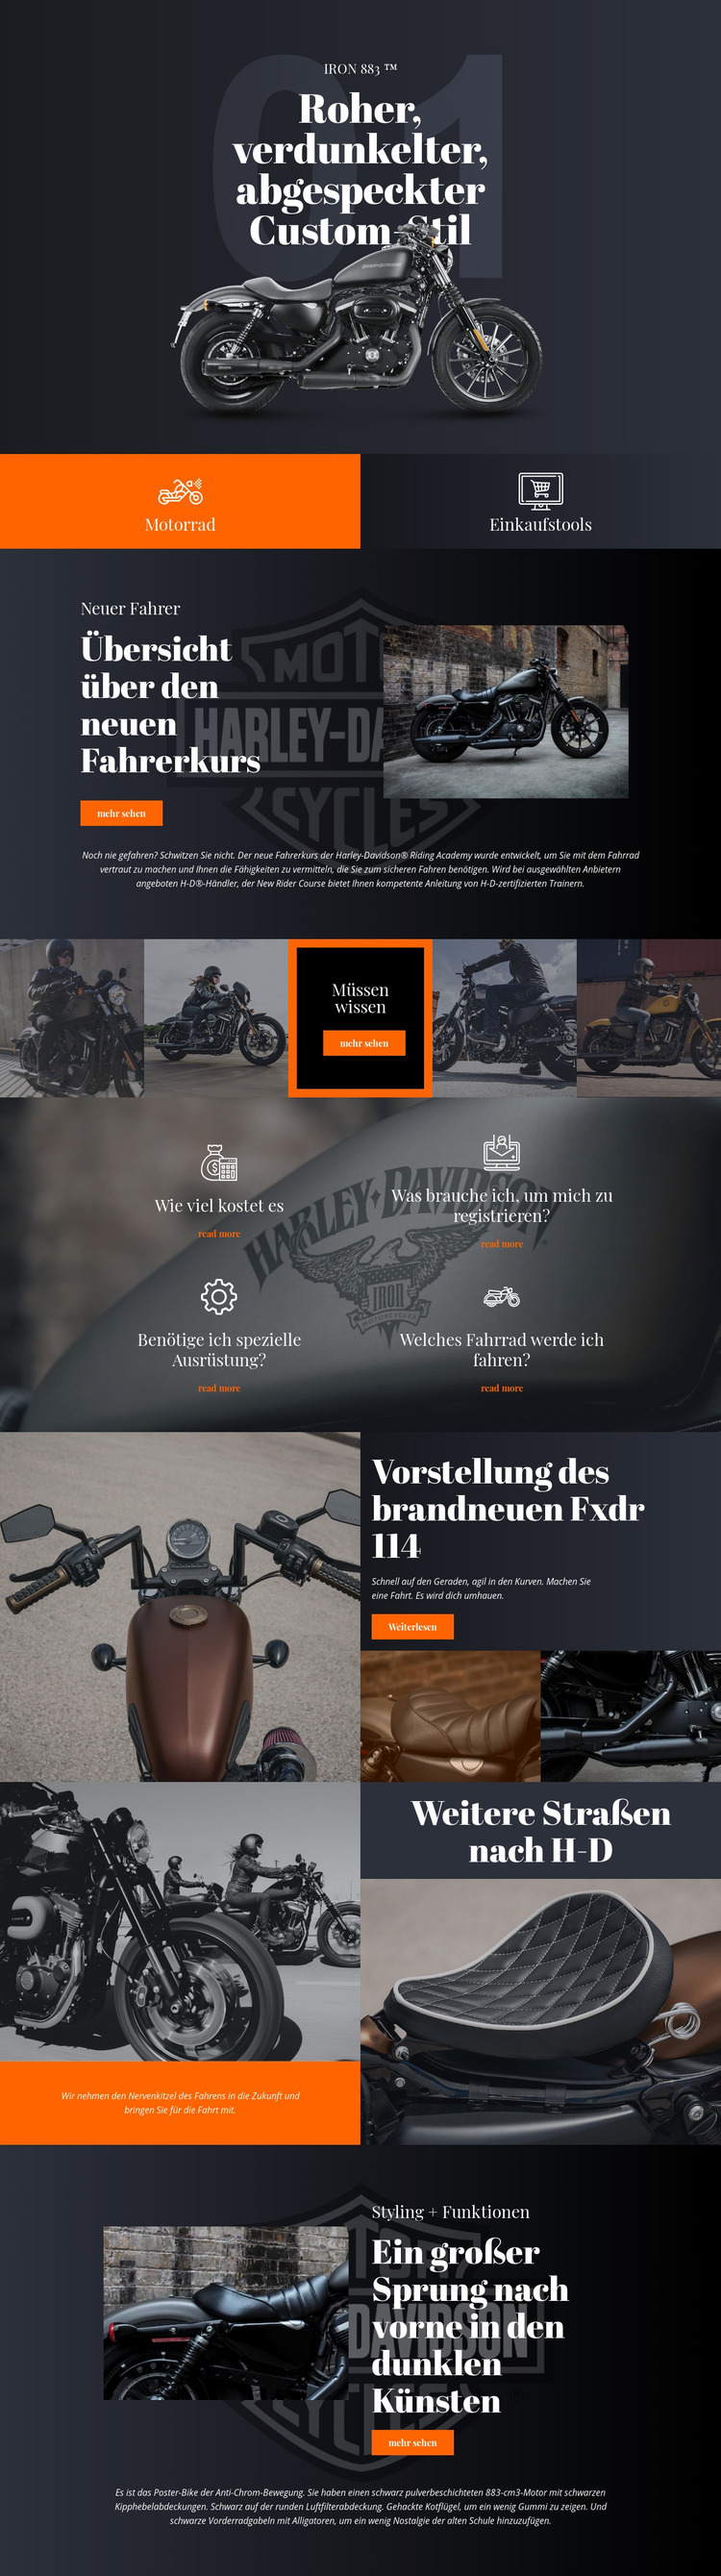 Harley Davidson Joomla Vorlage